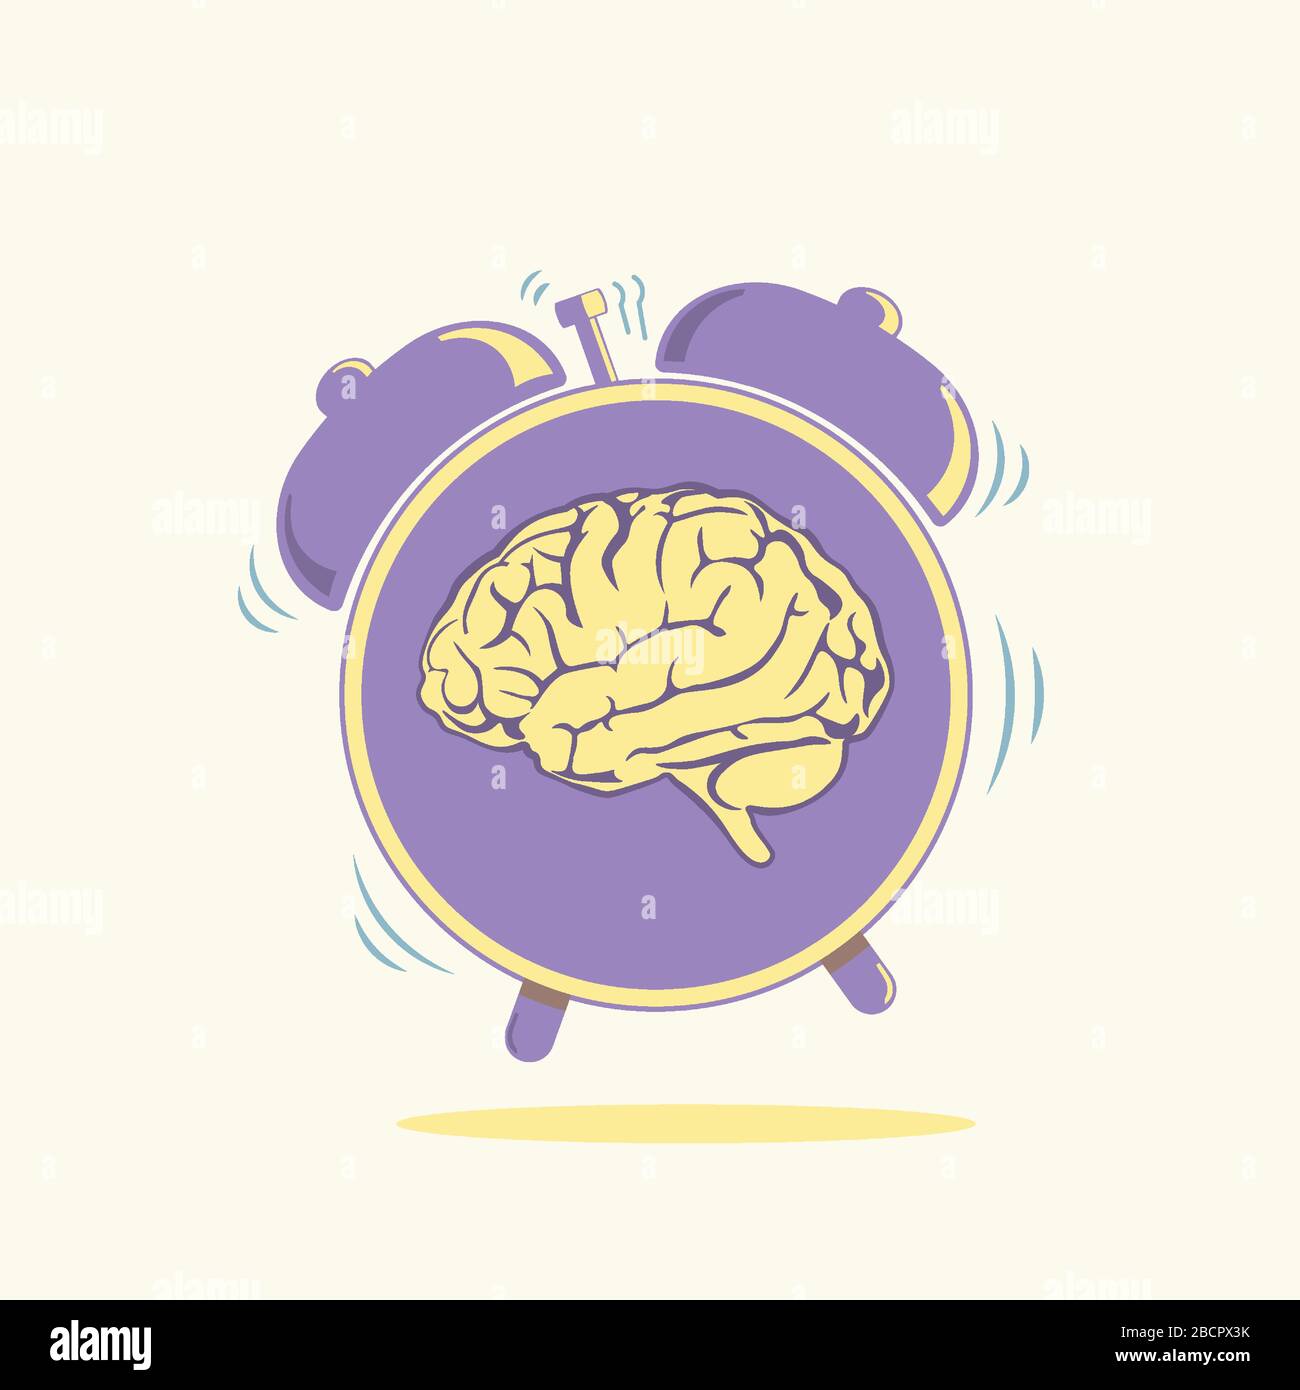 Cerveau humain avec illustration vectorielle du symbole de l'alarmclock. Concept de style de vie moderne. La santé émet une image symbolique. Illustration de Vecteur